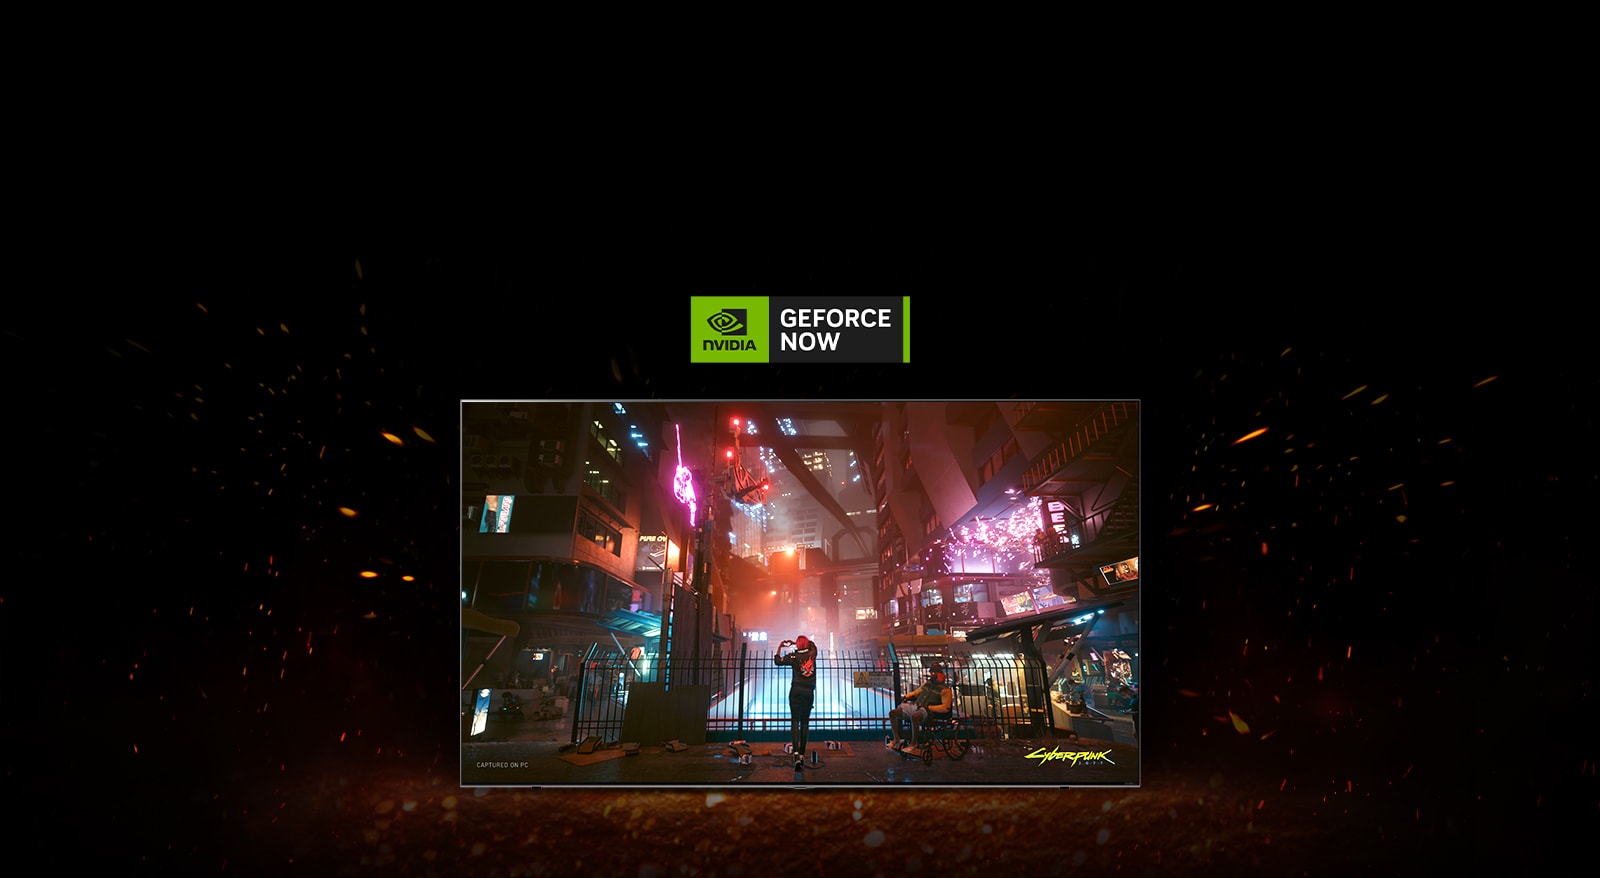 Flammene skyter opp rundt TV-en og du kan se Cyberpunks spillskjerm inne. Det er en Geforce now-logo på TV-en